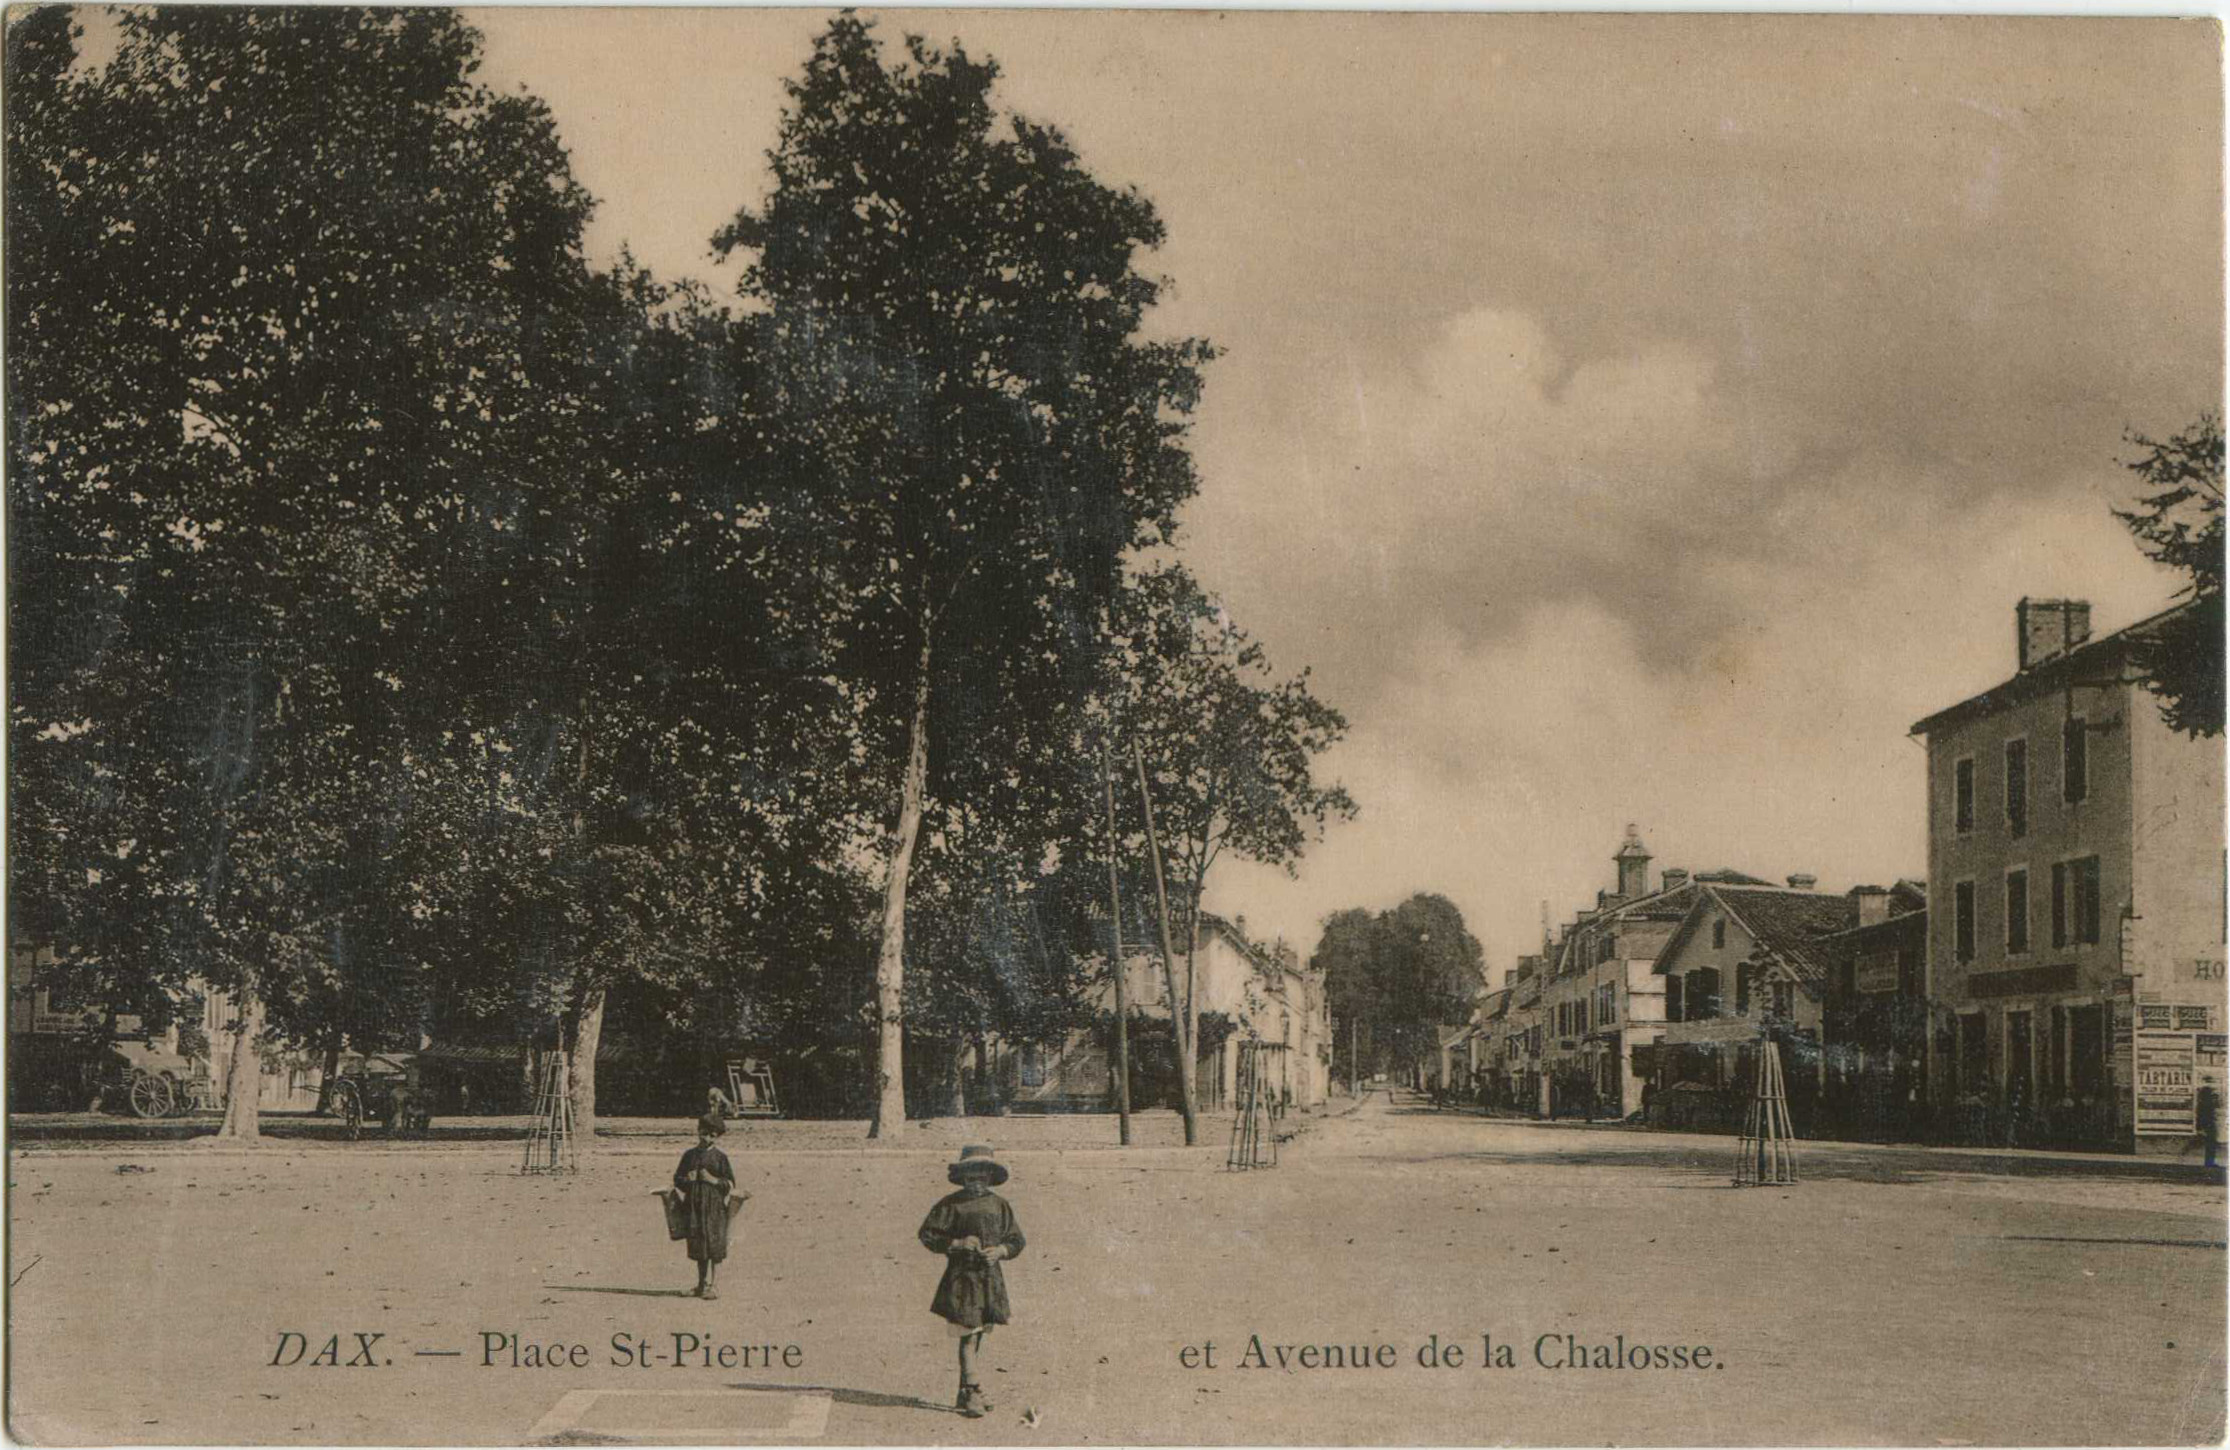 Dax - Place St-Pierre et Avenue de la Chalosse.